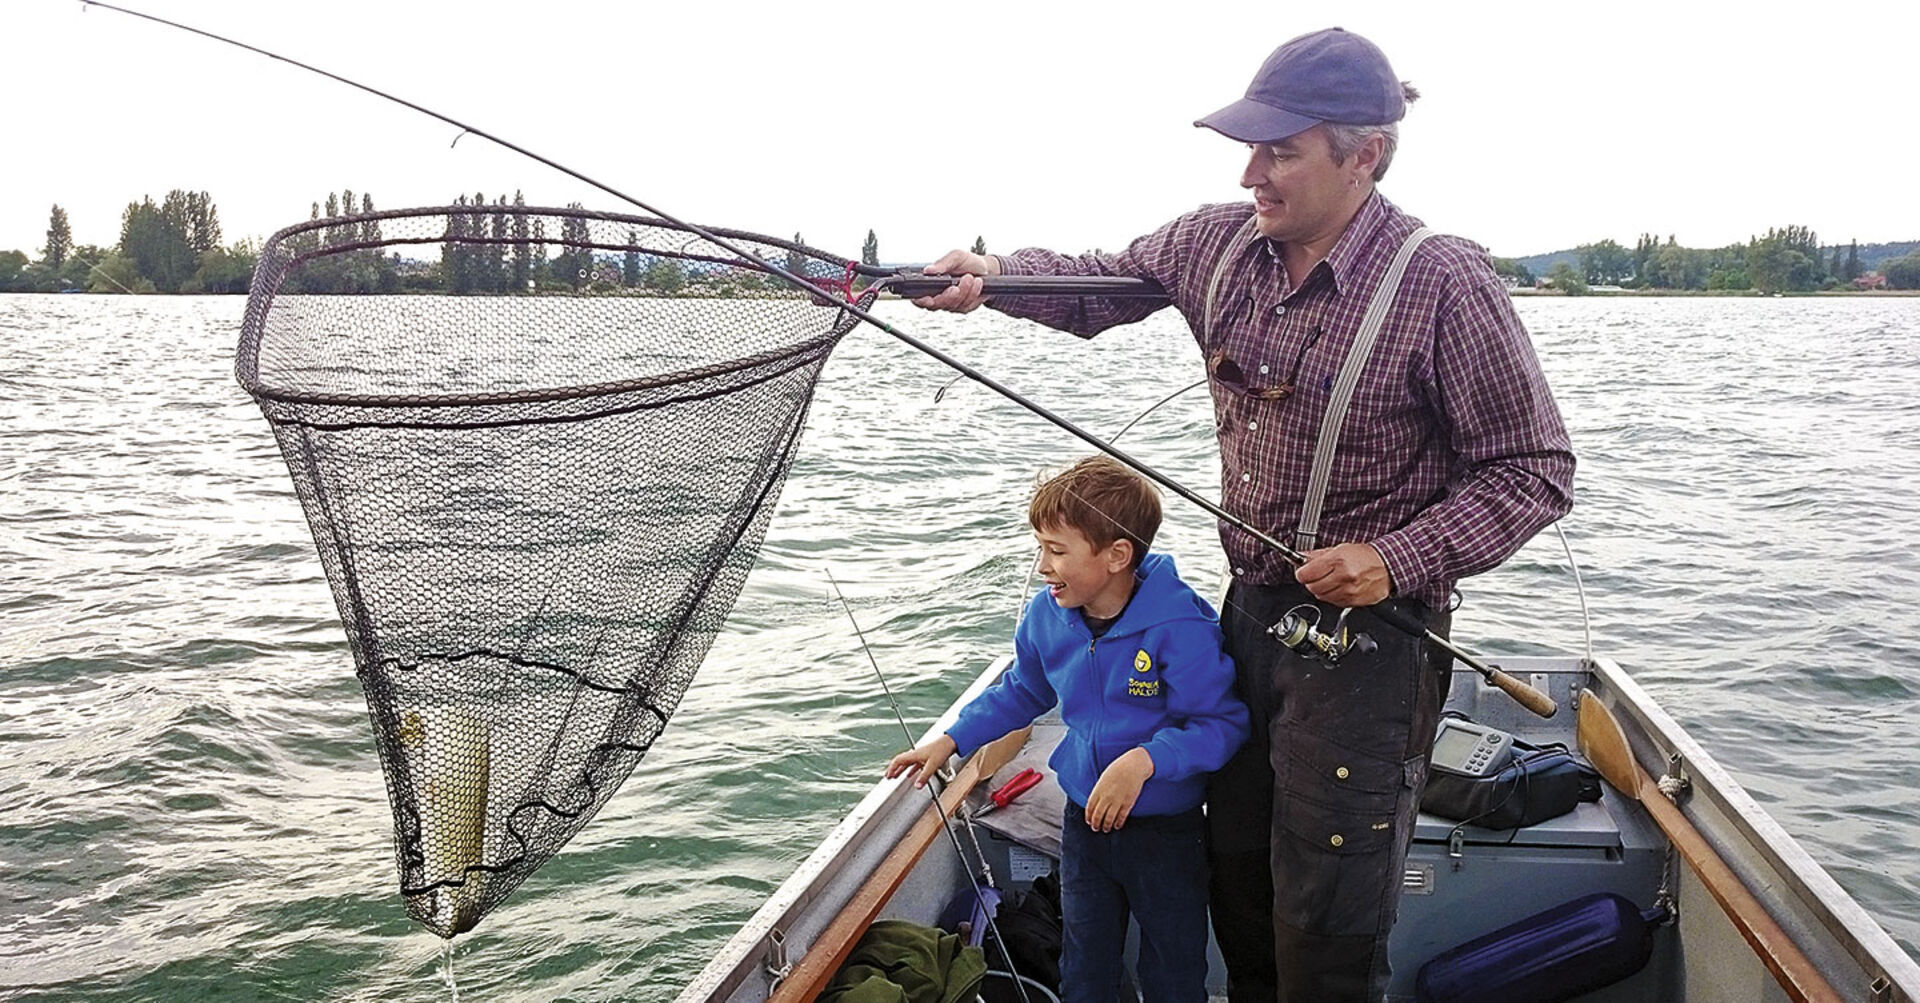  Der erste Hecht ist im Boot. Vater und Sohn sind glücklich.  